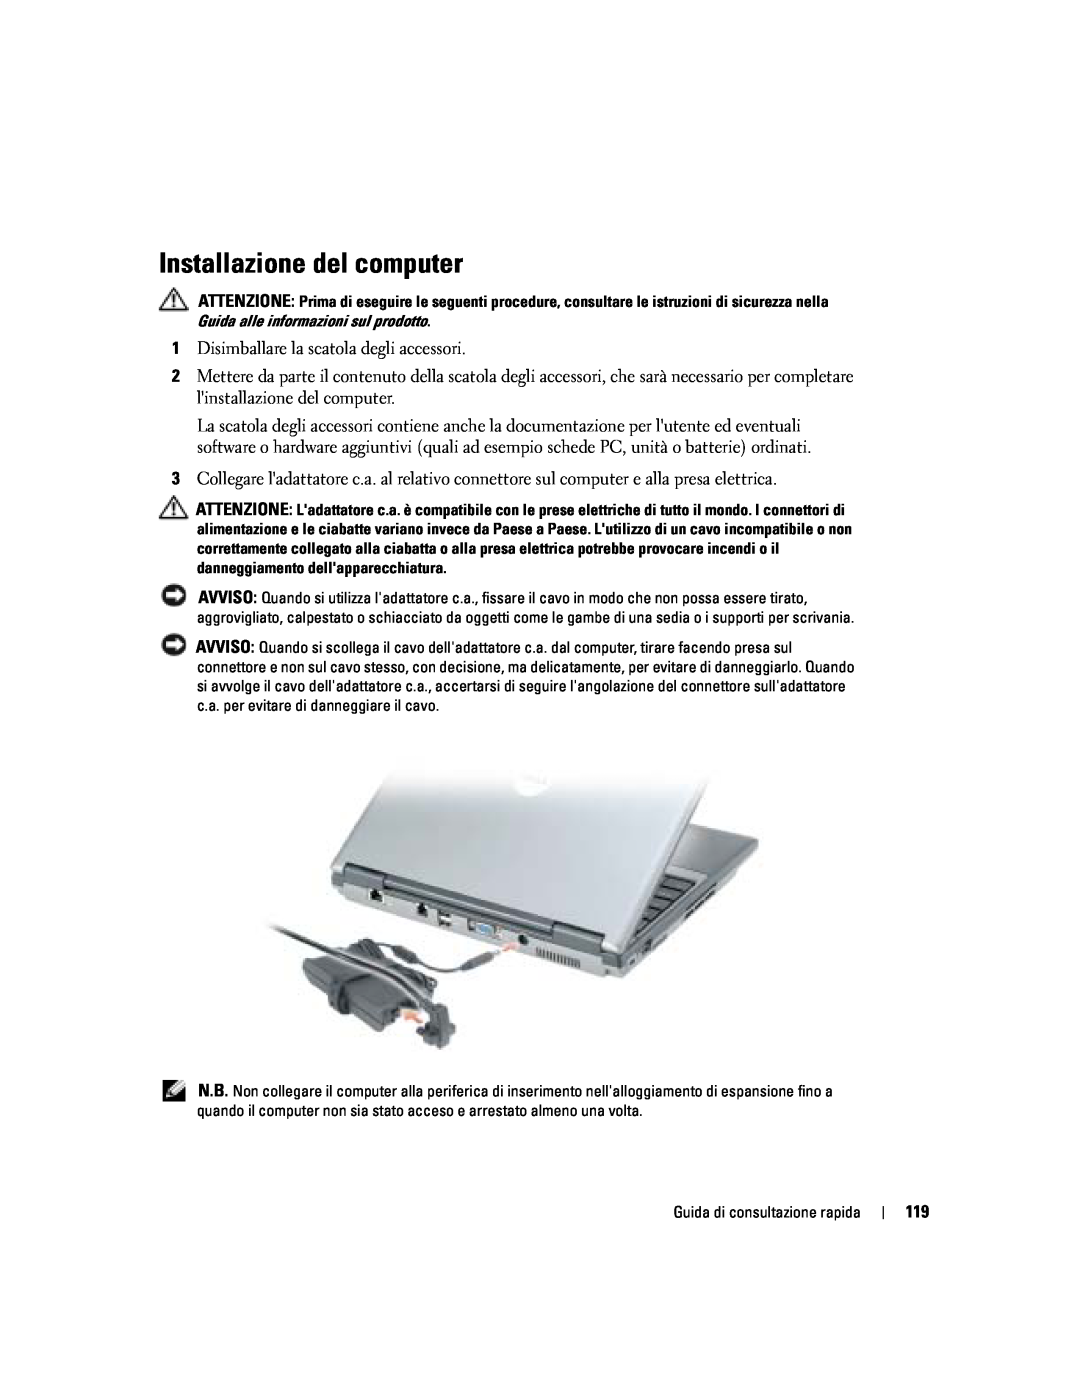 Dell PP06S manual Installazione del computer 